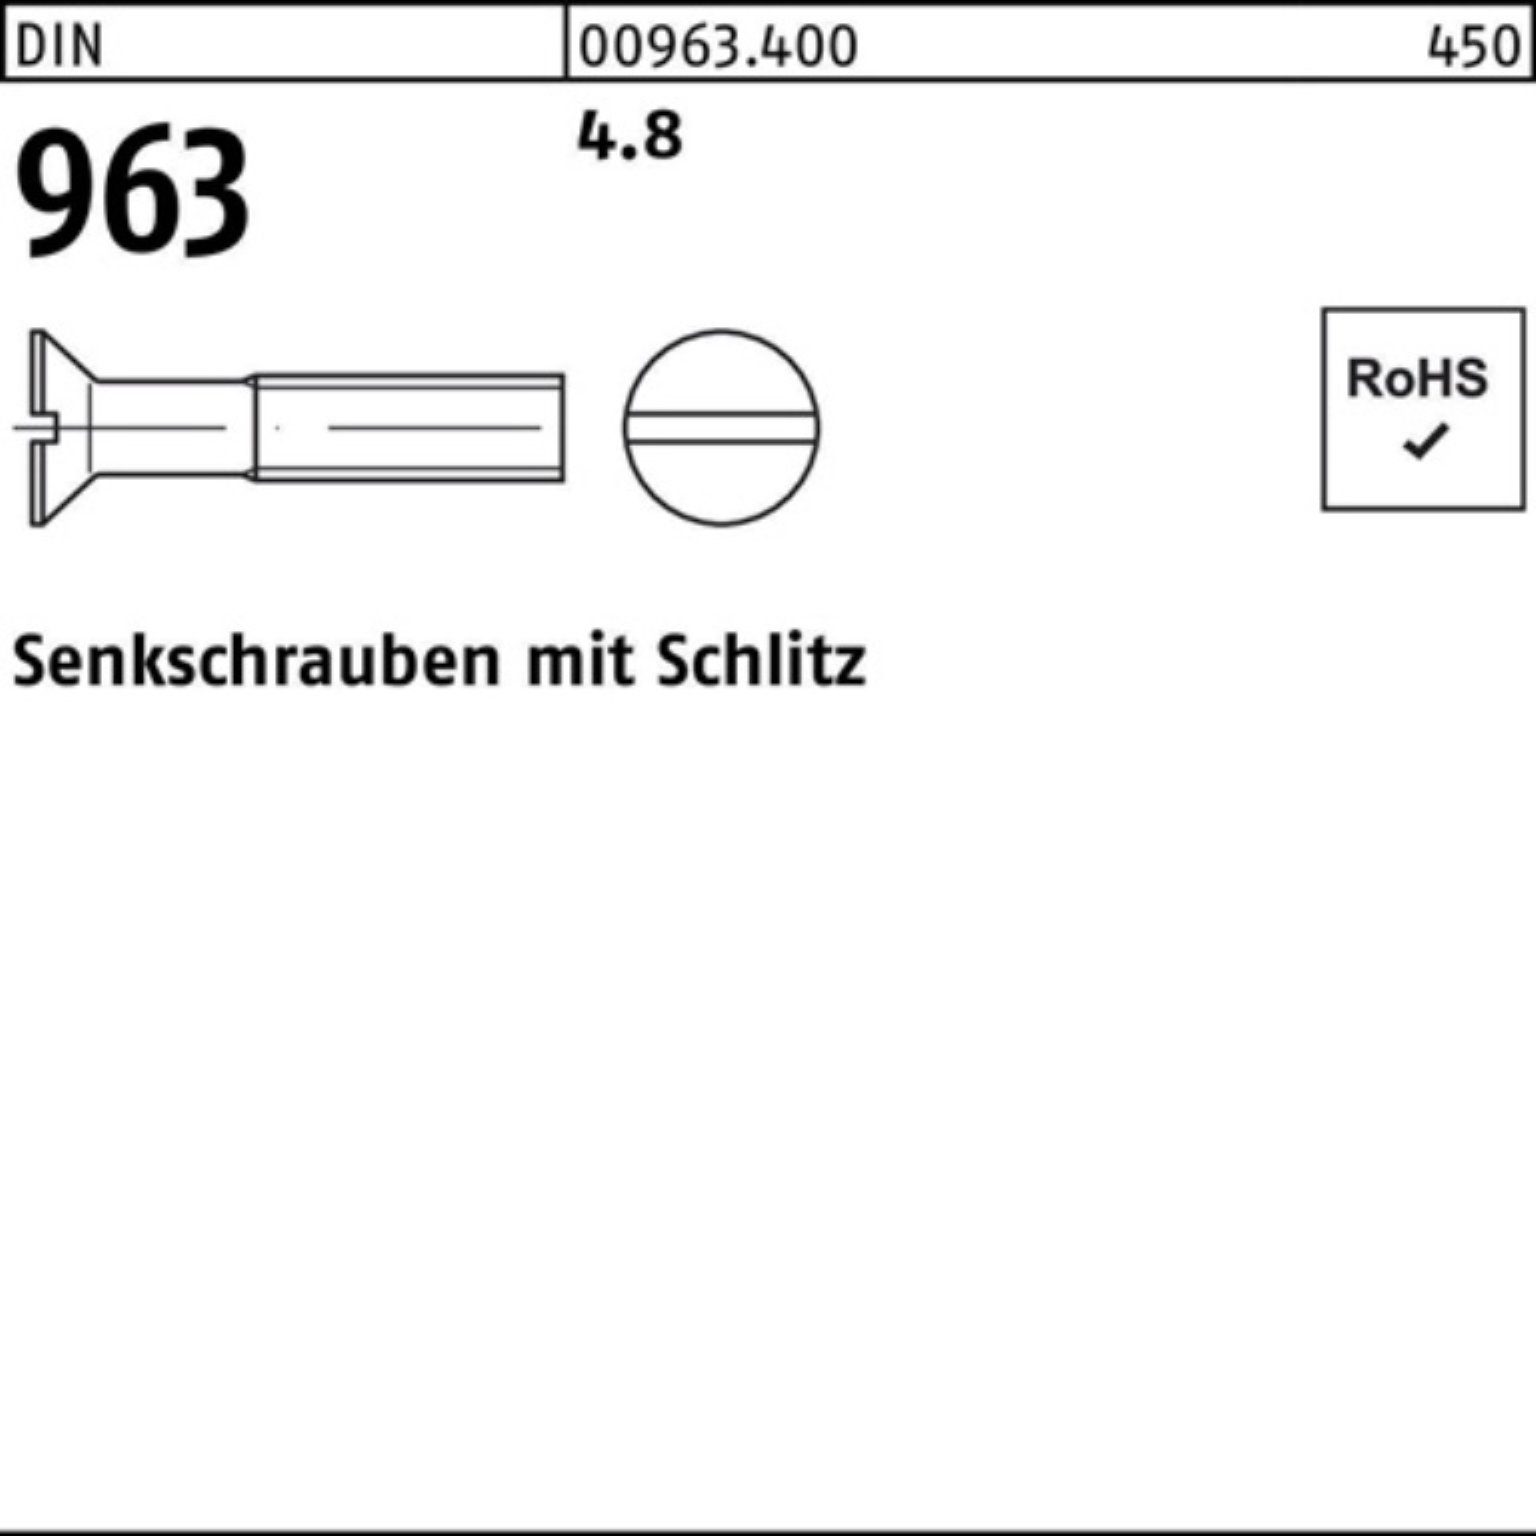 Reyher Senkschraube 2000er Pack DIN M4x 4.8 10 Schlitz Stück 2000 Senkschraube 96 963 DIN